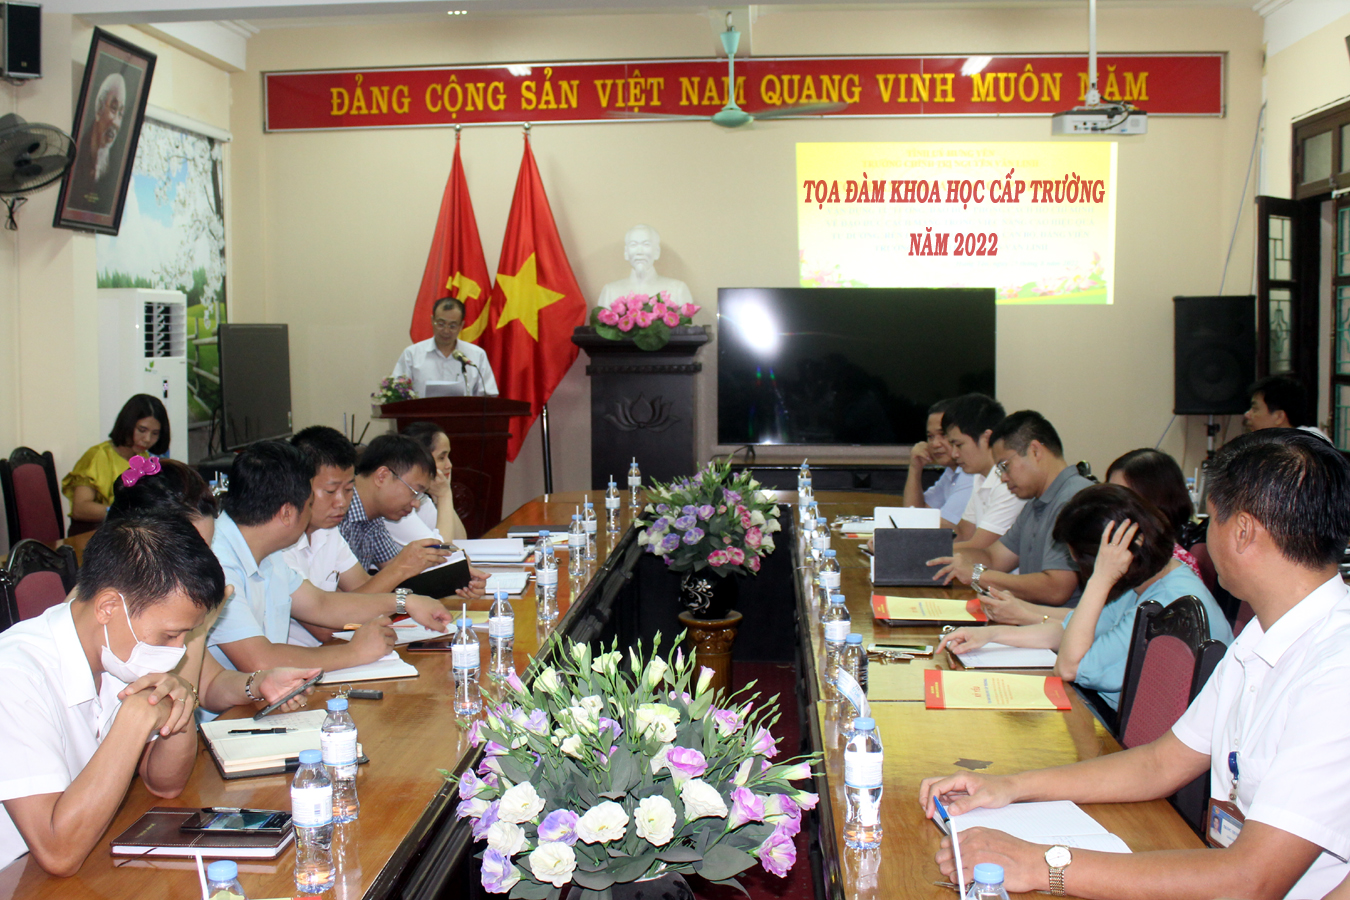 Trường Chính trị Nguyễn Văn Linh tổ chức tọa đàm khoa học cấp trường